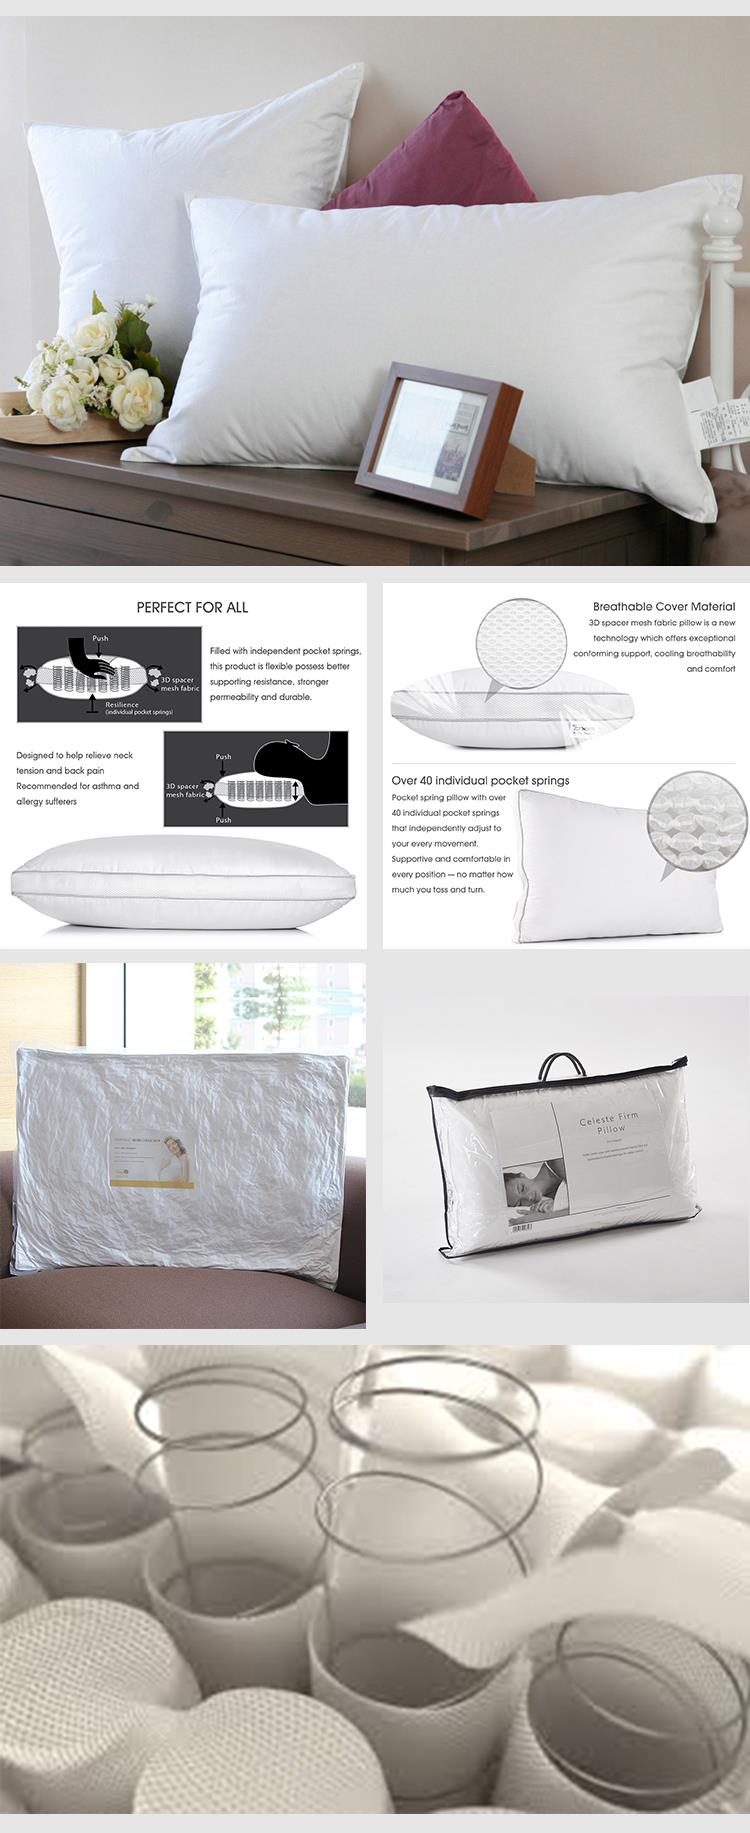 pillows for mattress.jpg